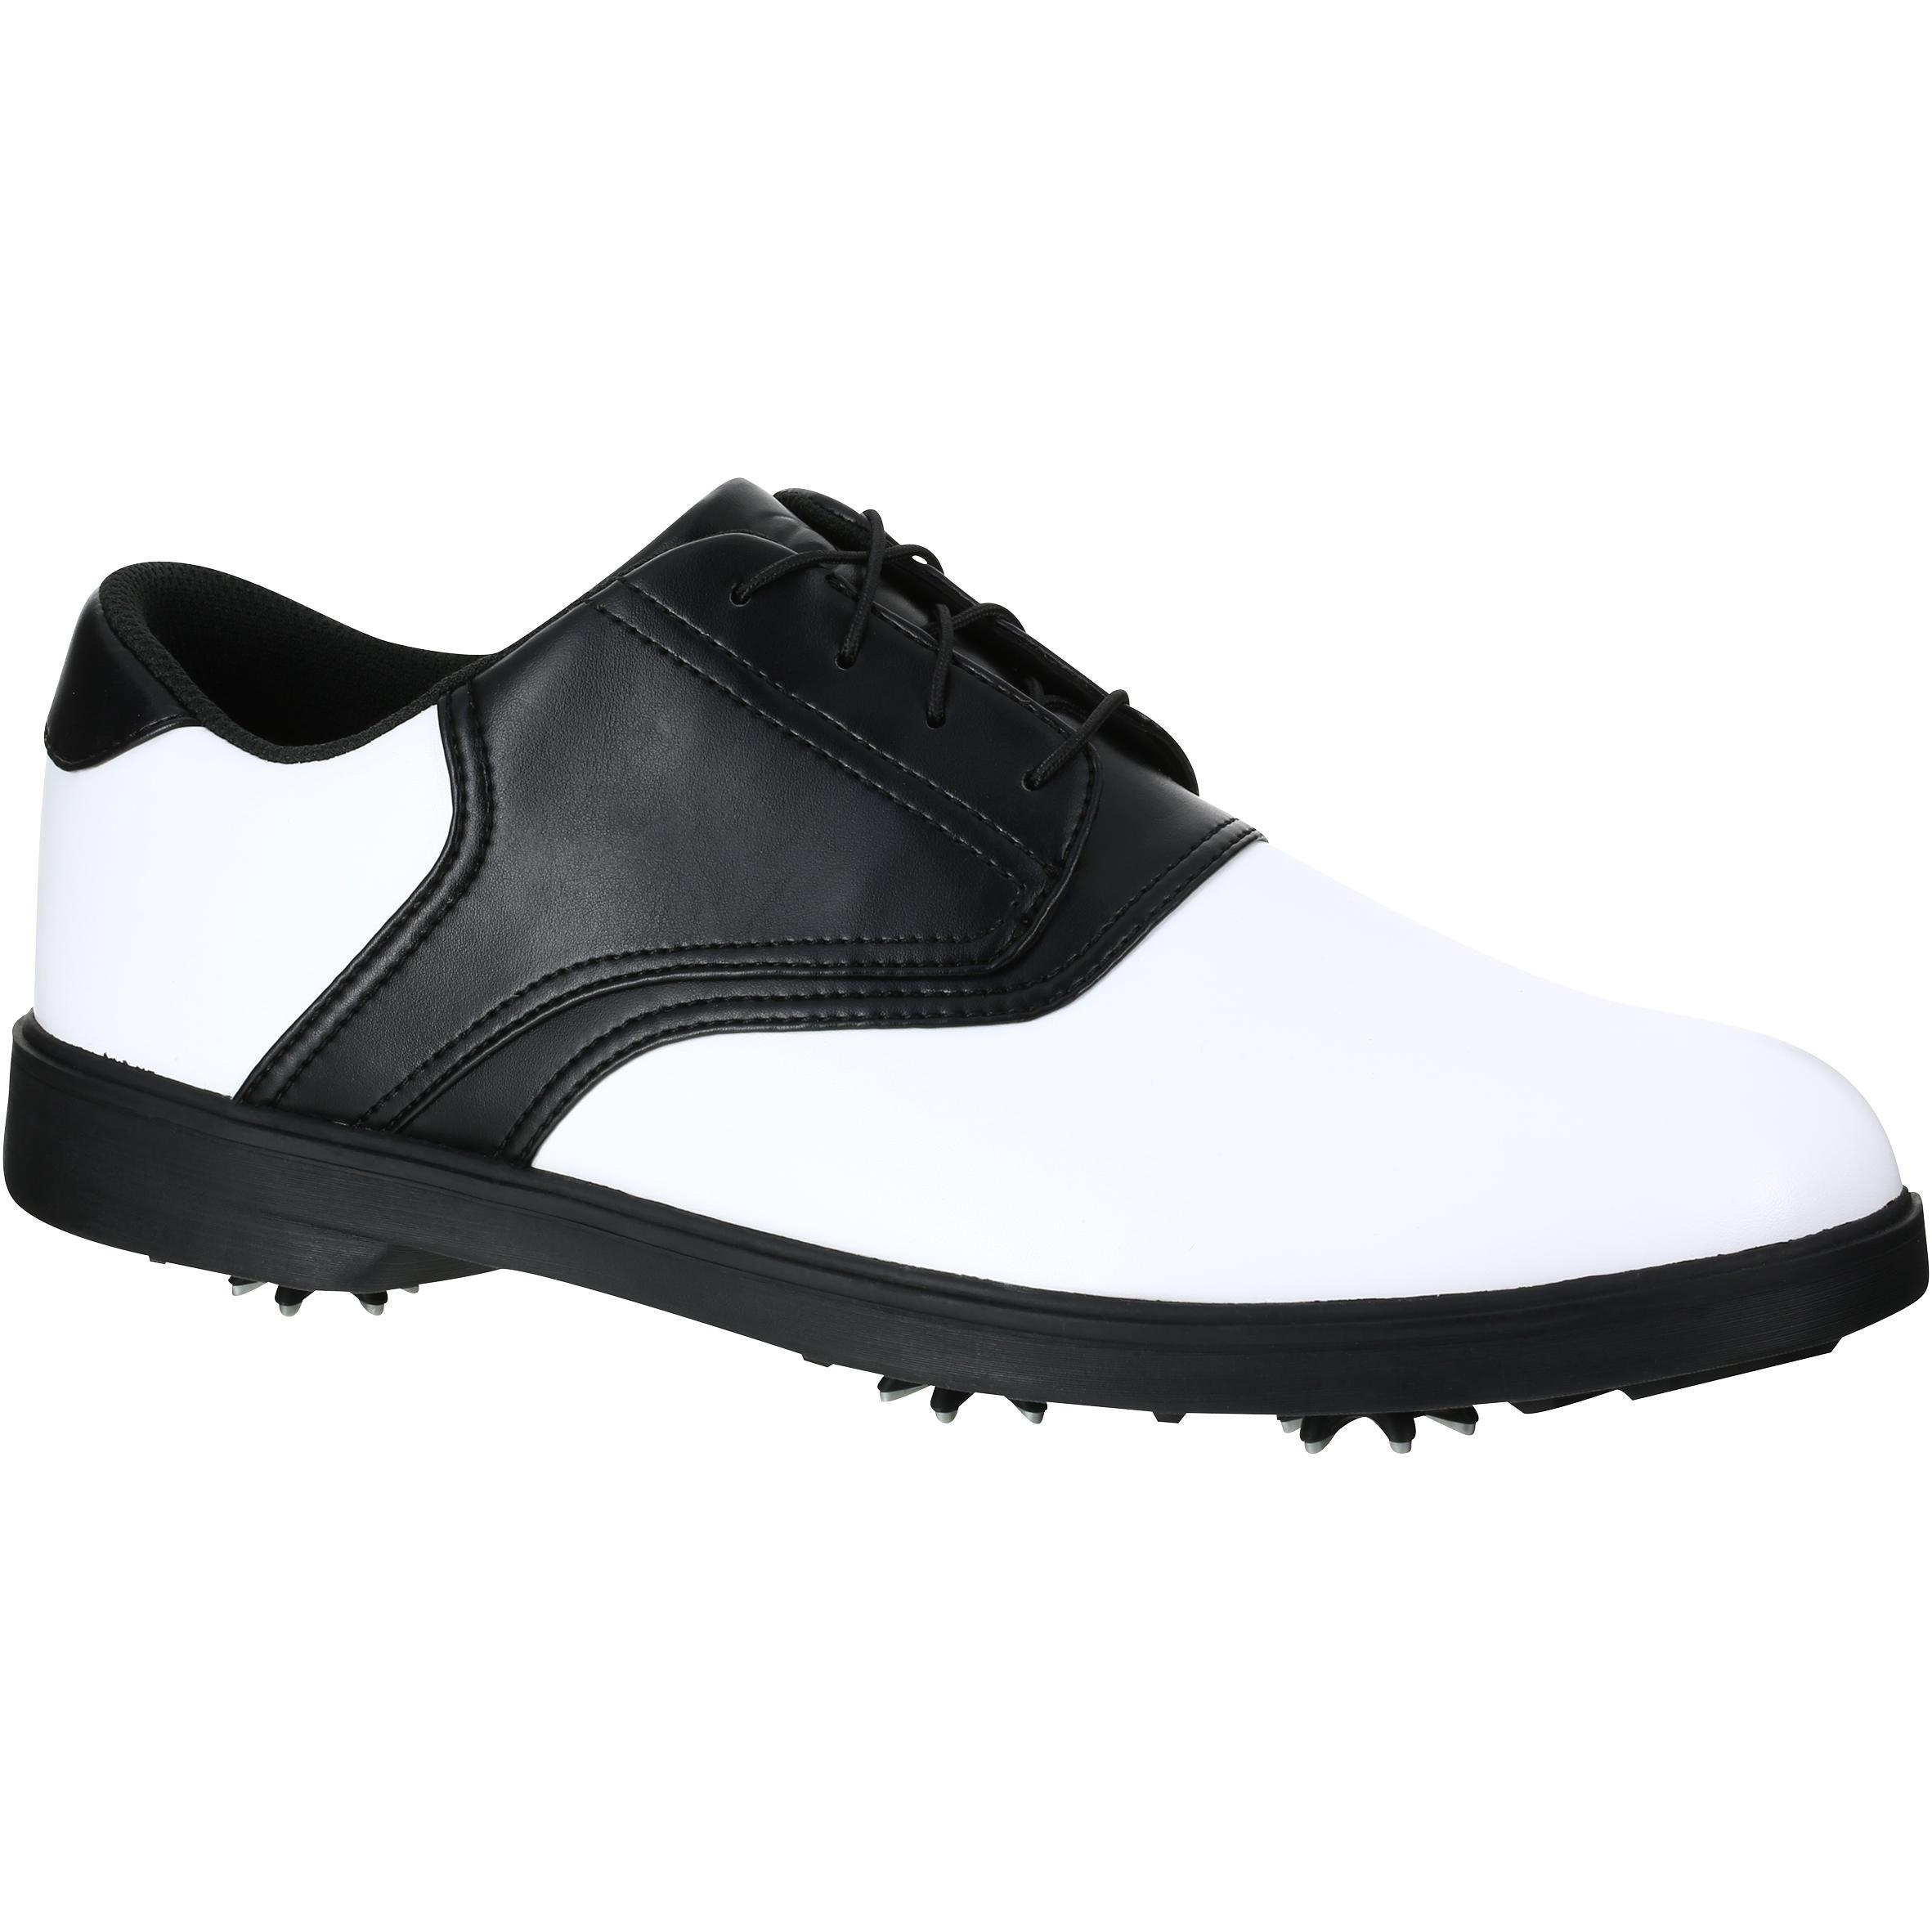 [ด่วน!! โปรโมชั่นมีจำนวนจำกัด] รองเท้ากอล์ฟมีปุ่มยางรุ่น 500 สำหรับผู้ชาย (สีขาว/ดำ) สำหรับ กอล์ฟ